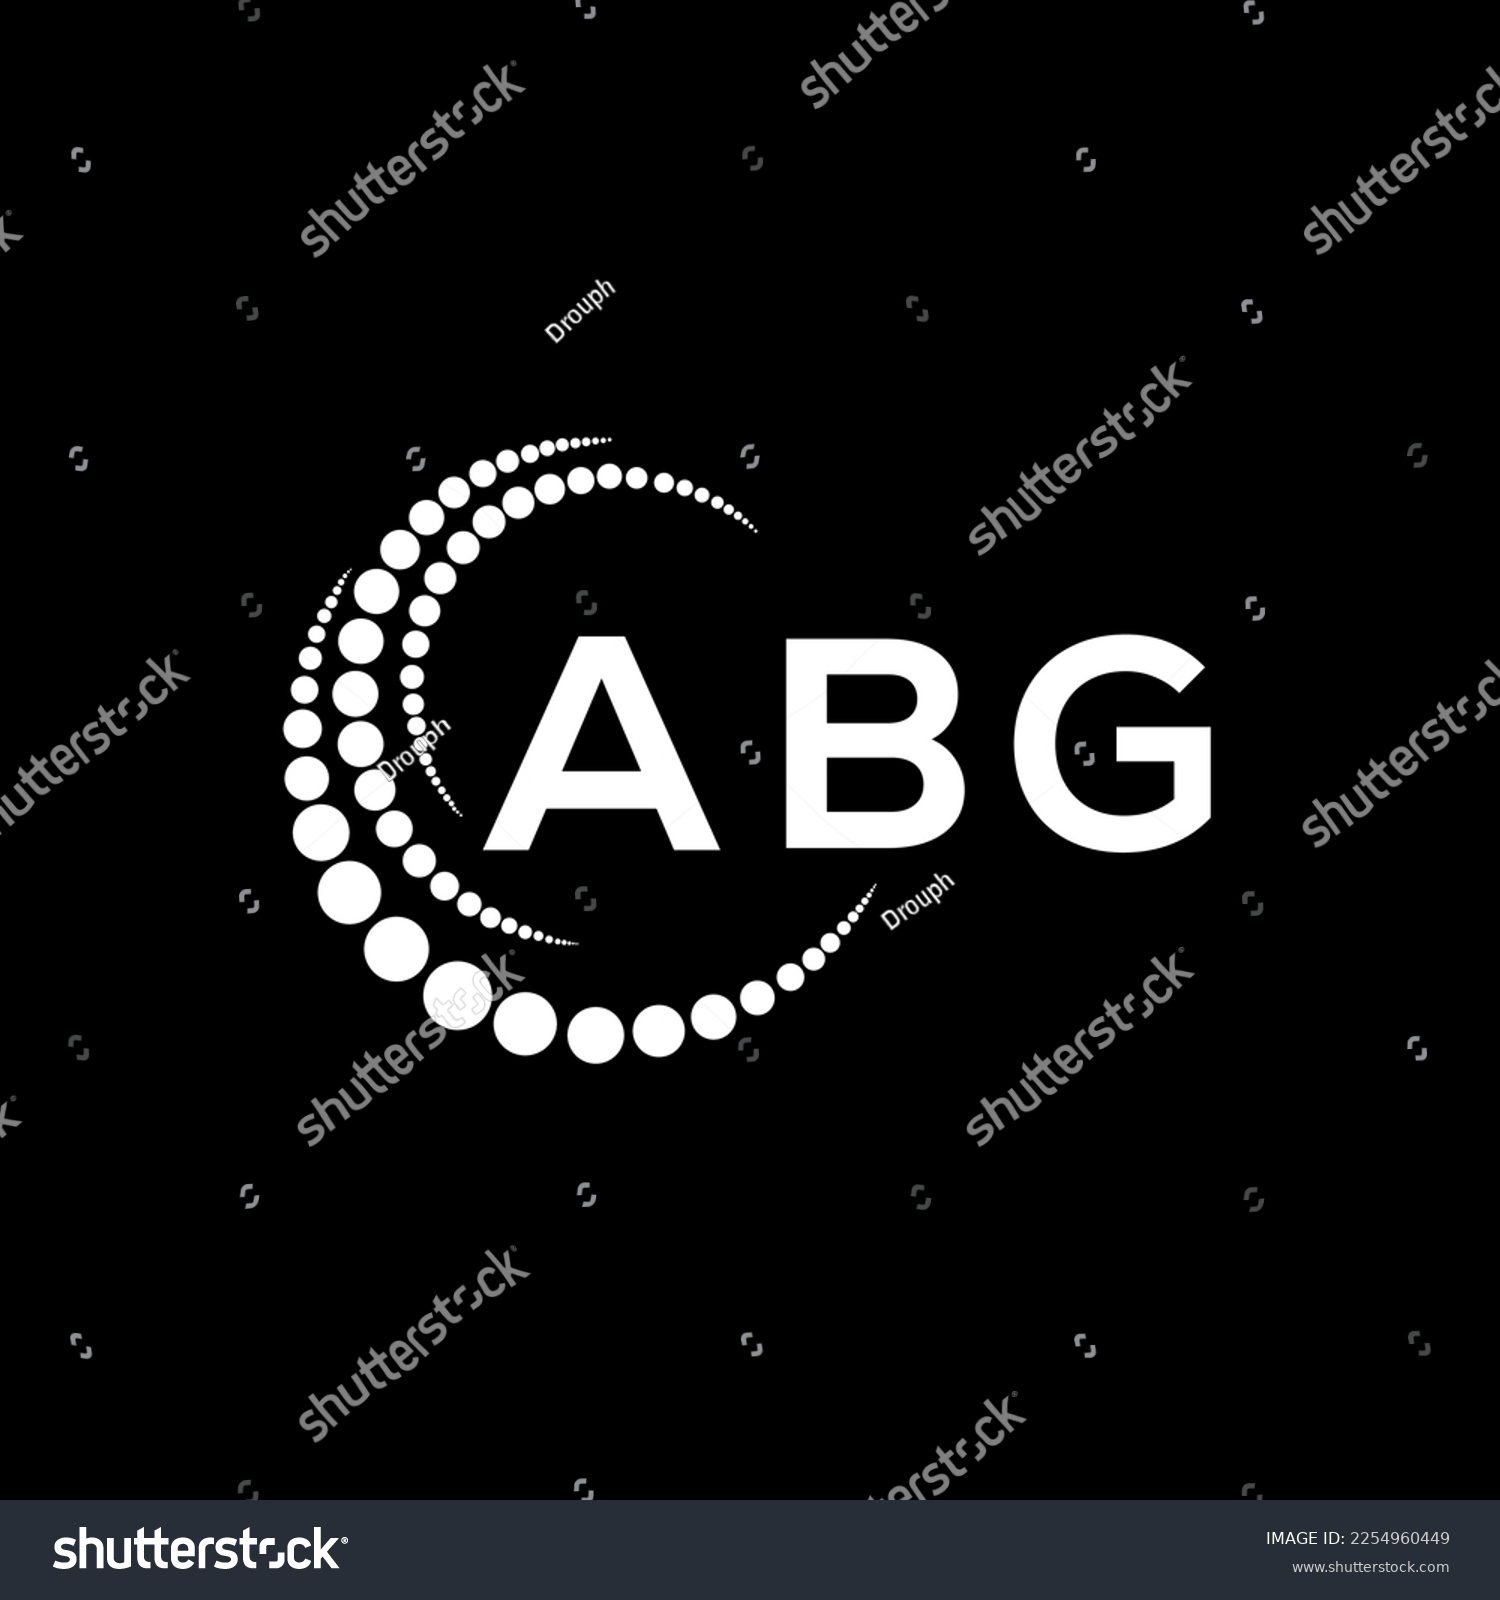 SVG of ABG letter logo creative design. ABG unique design.
 svg